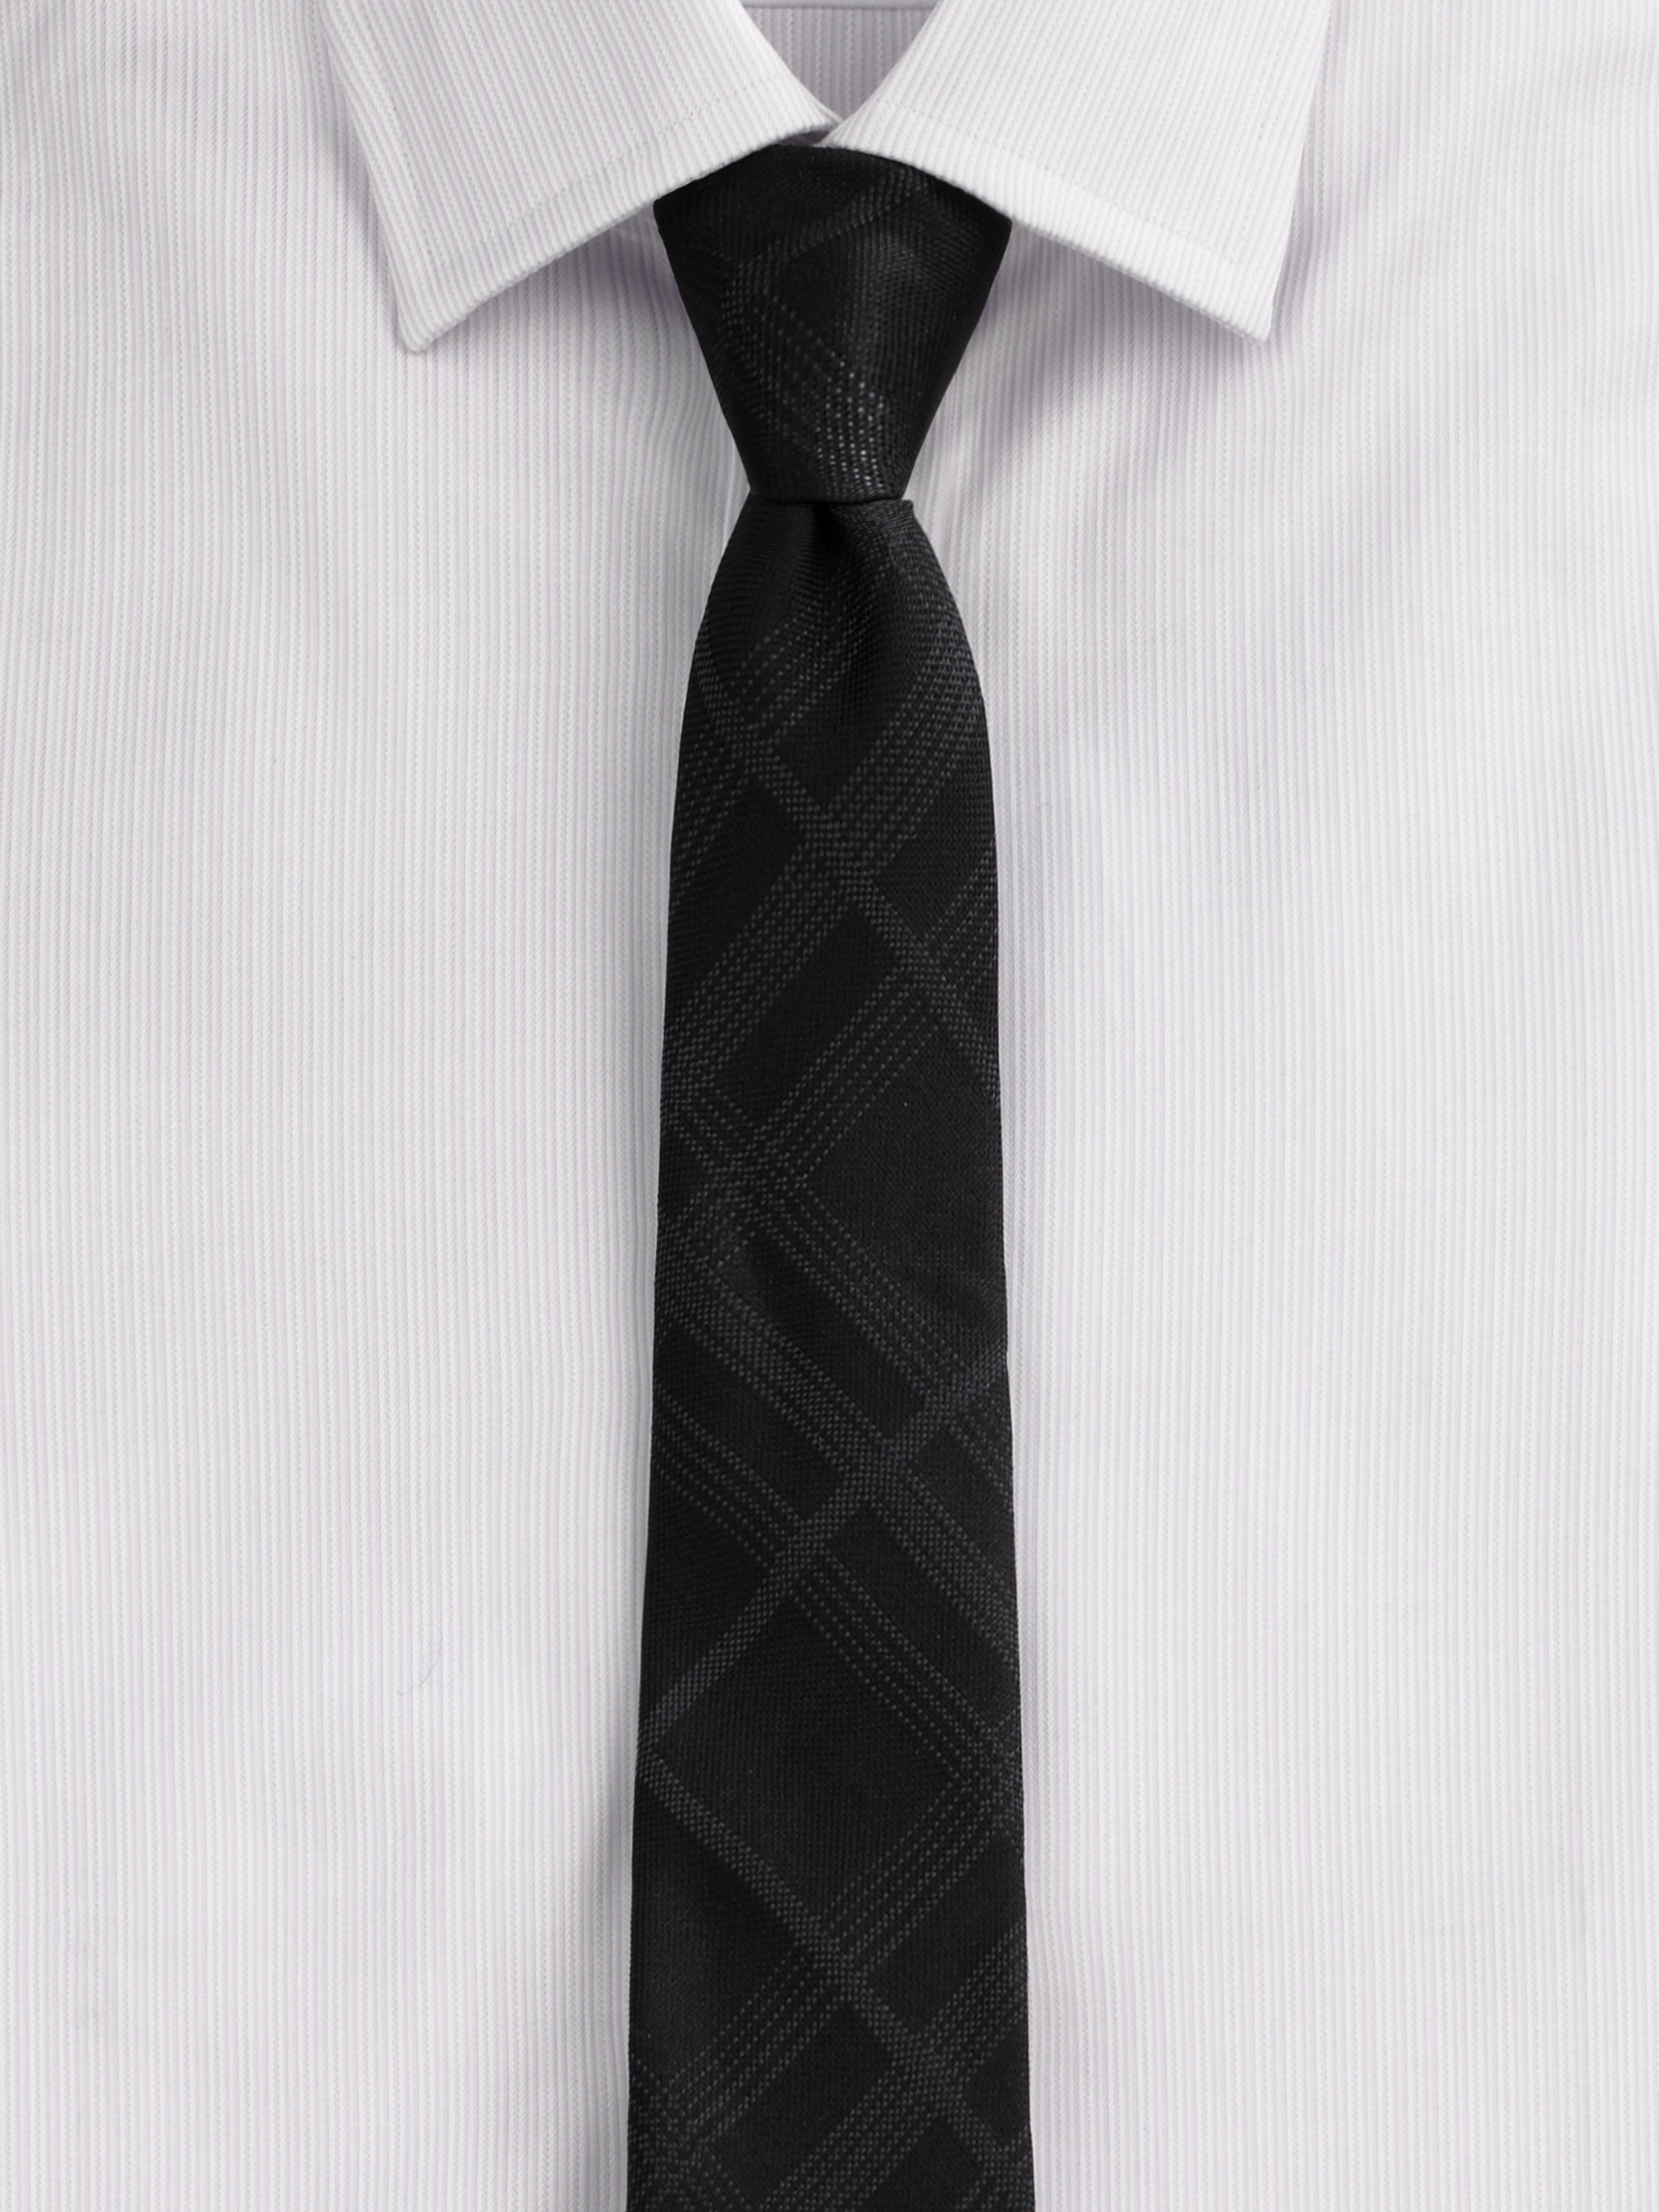 Галстук. Черный галстук. Галстук мужской. Чёрная рубашка с белым галстуком. Мужской черный галстук